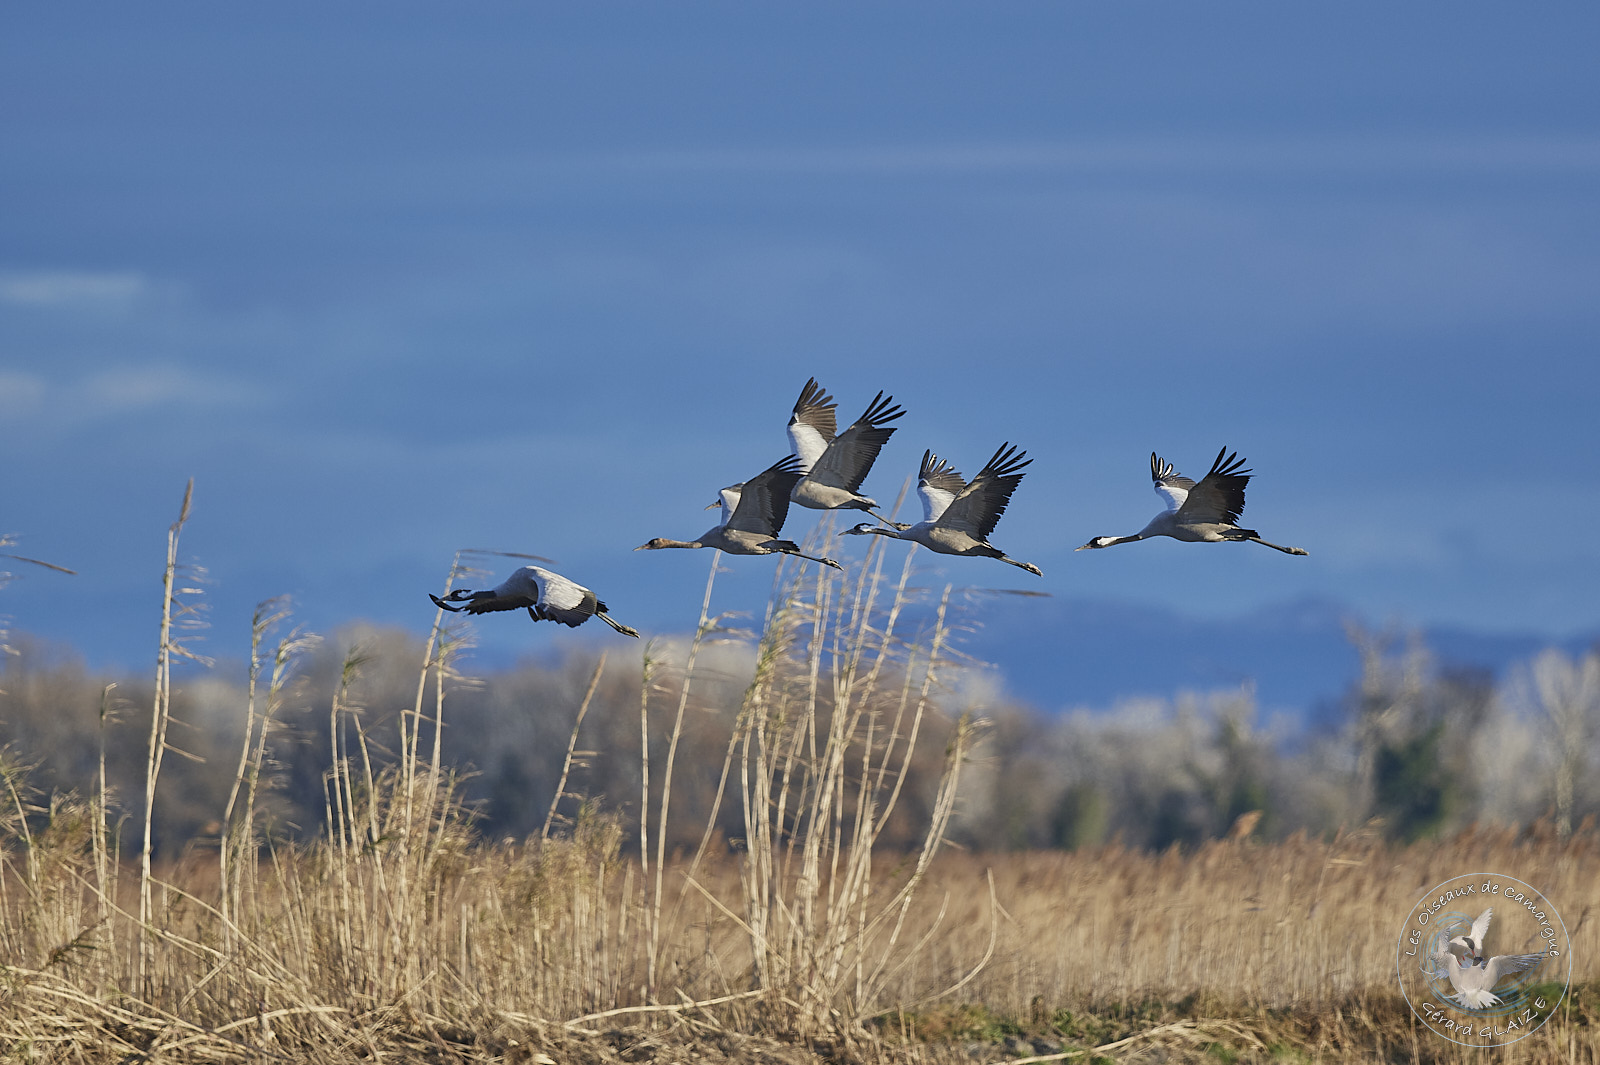 Vol de Grues cendrées - Flight of Common Cranes